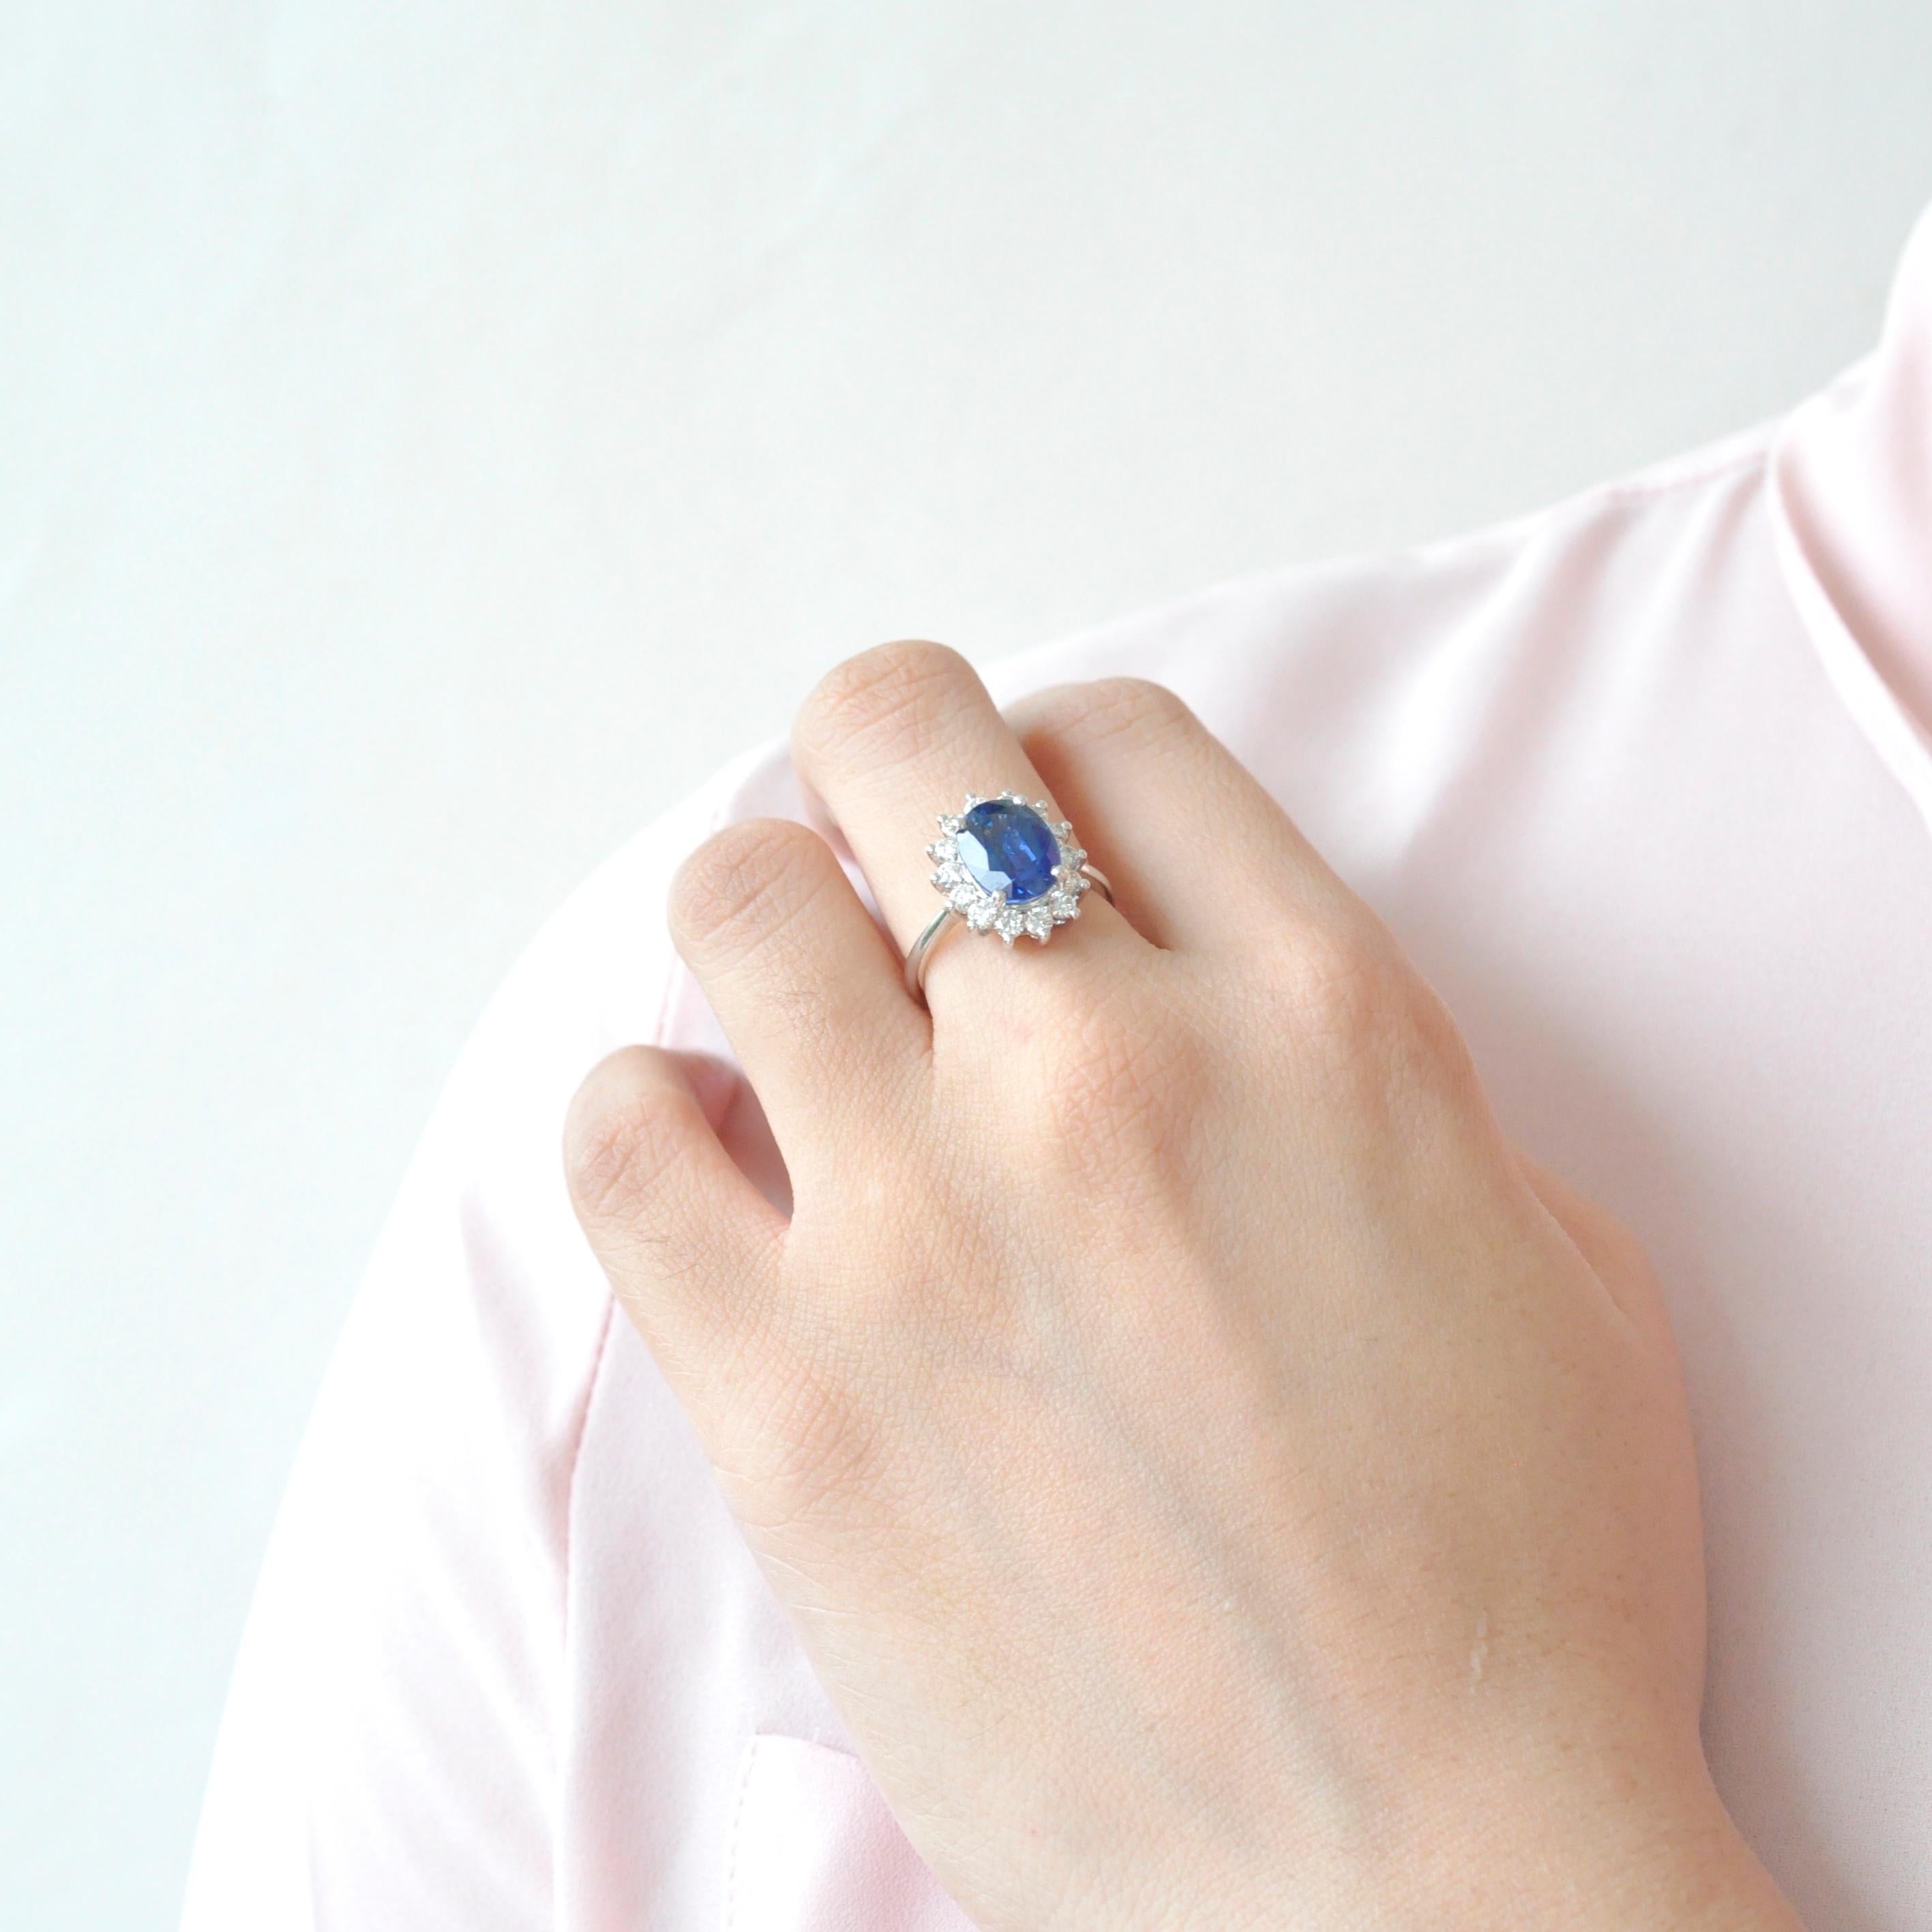 18 Karat Weißgold zertifizierter ovaler blauer Saphir-Diamant-Verlobungsring.

Das ikonische Design des ovalen blauen Saphir-Diamant-Verlobungsrings von Lady Diana erinnert an ein wichtiges Ereignis in der Beziehung eines Paares - den großen